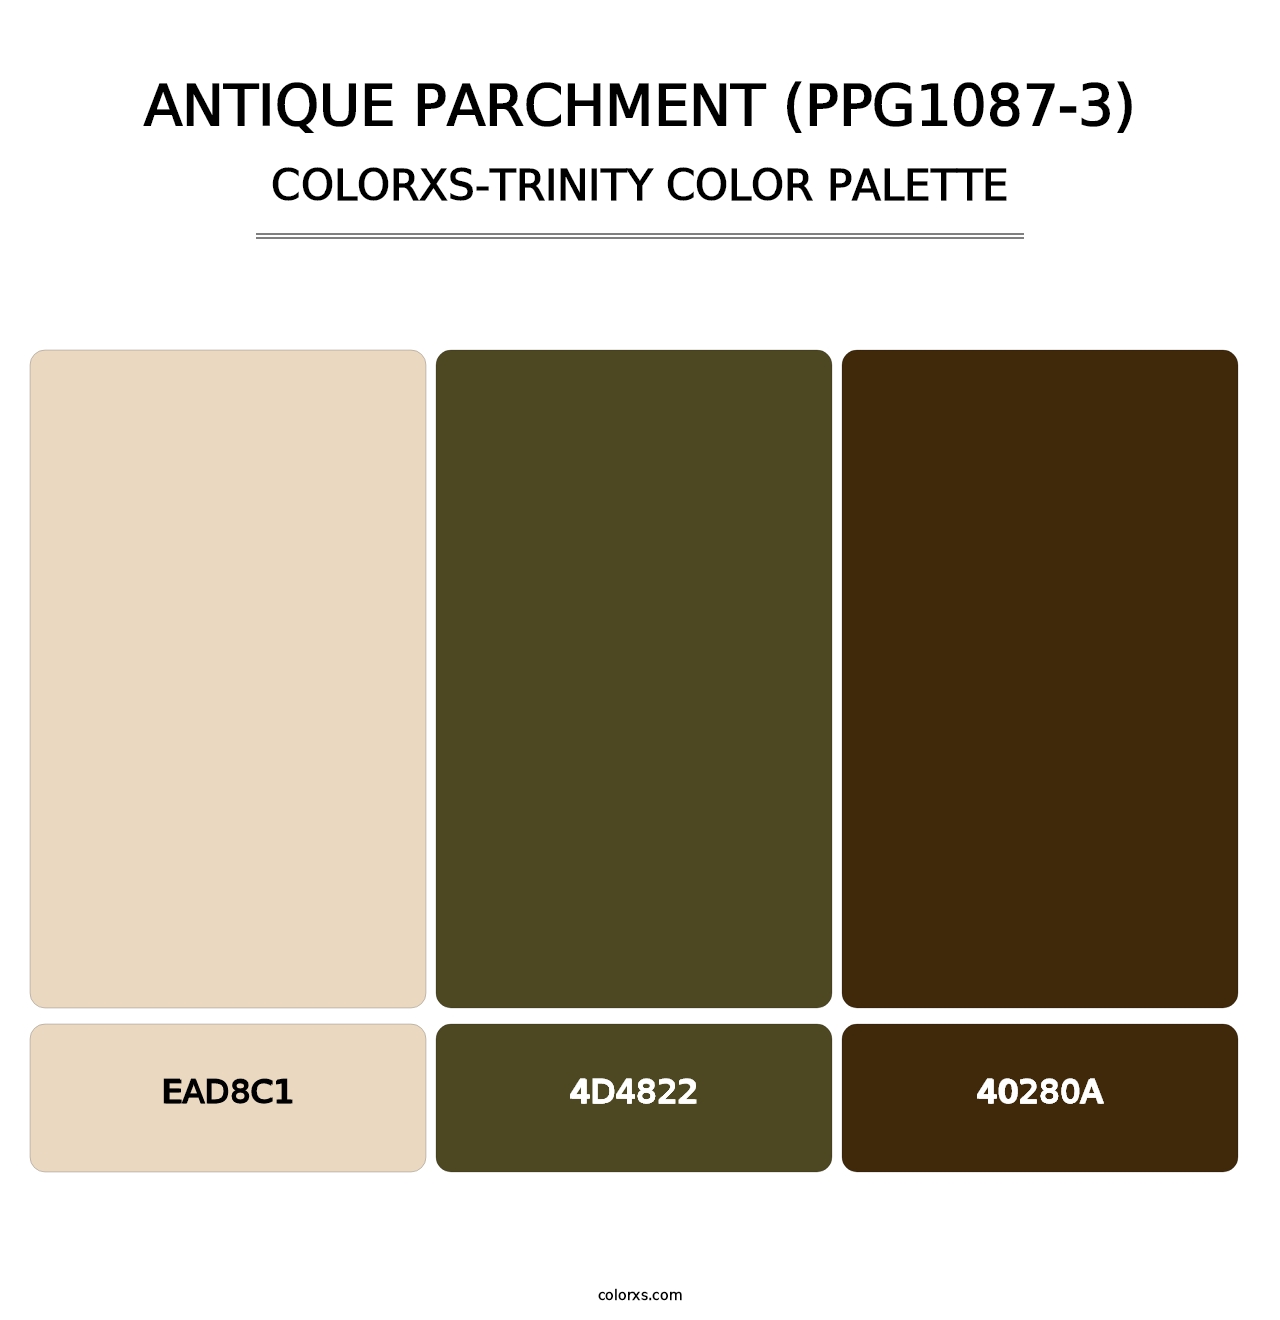 Antique Parchment (PPG1087-3) - Colorxs Trinity Palette